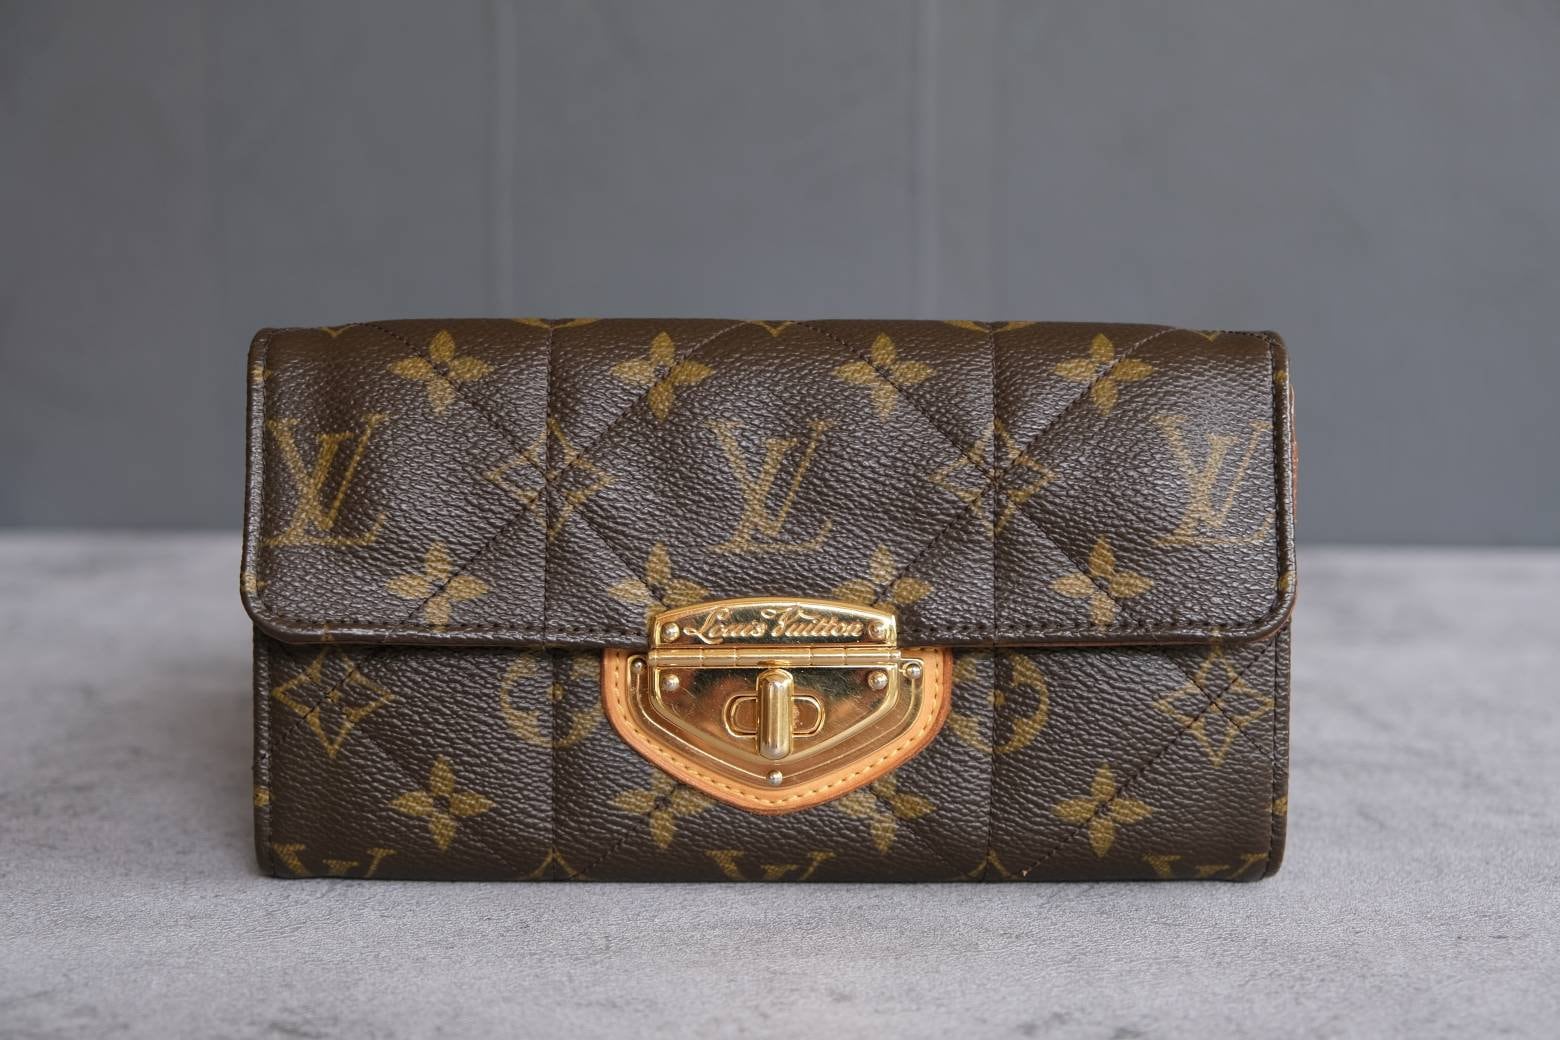 Authentic Louis Vuitton Limited Edition Etoile Wallet 